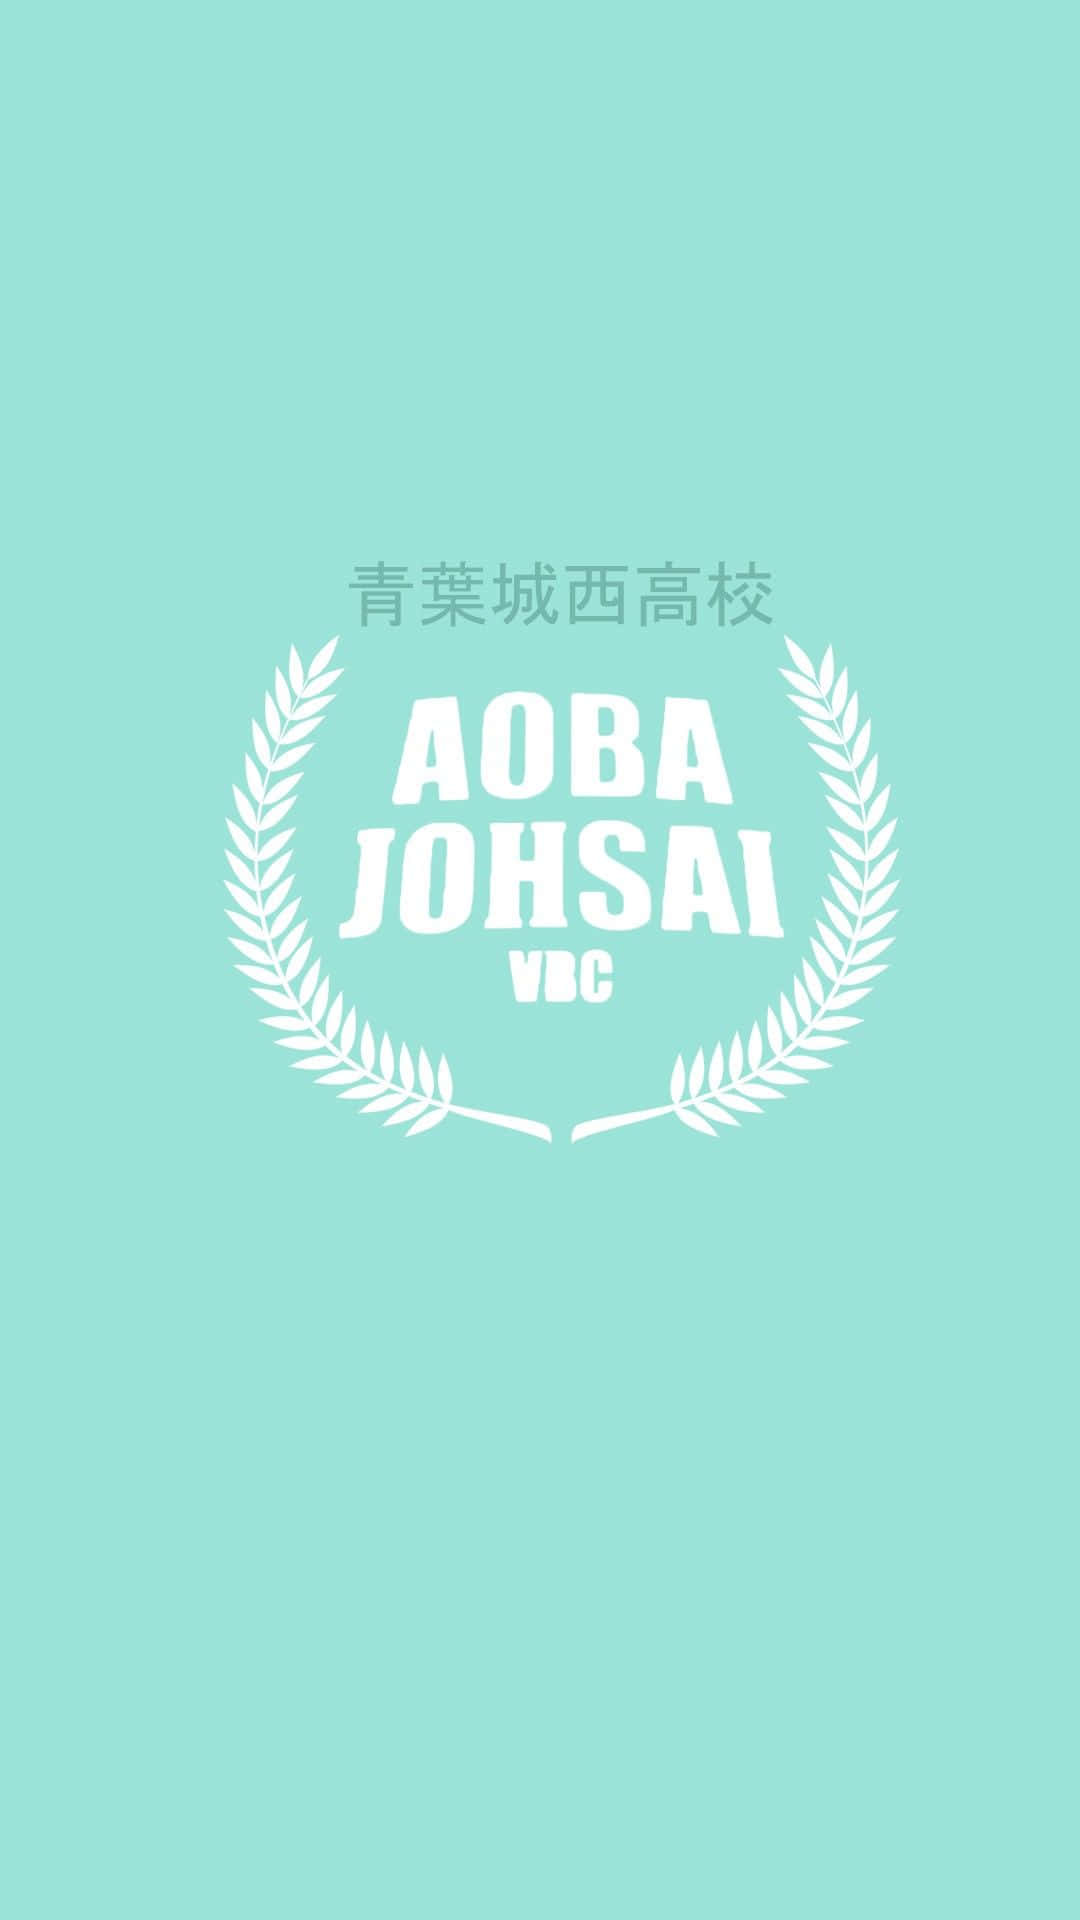 Durchdie Bildung Einer Teamarbeit, Fegt Aoba Johsai Den Platz Mit Ihren Gegnern Sauber. Wallpaper